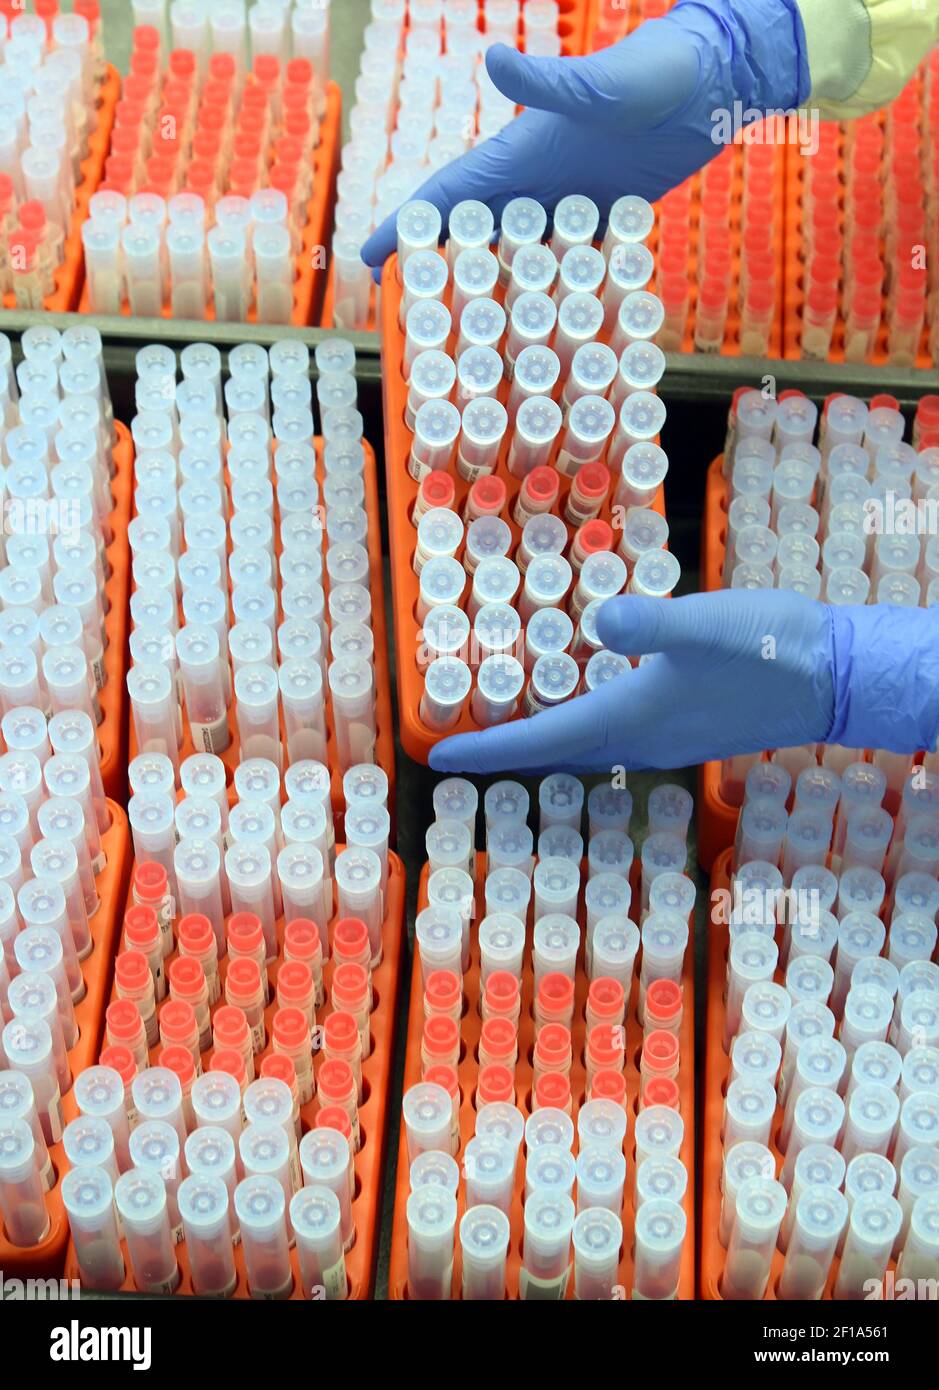 03 marzo 2021, Sassonia, Lipsia: Nel laboratorio MVZ, il capo del dipartimento PCR, la dott.ssa Katja Sänger, preleva i campioni SARS-COV-2 dall'archivio dei campioni per le misurazioni di controllo. Nel laboratorio, che appartiene al gruppo Limbach, circa 10,000 campioni di PCR vengono trattati settimanalmente per il rilevamento della SARS-COV-2 per cliniche e medici in pratica privata. Attualmente, vengono diagnosticate anche varianti di virus con un potenziale di rischio aumentato, compresa la variante britannica B.1.1.7 attualmente particolarmente diffusa, ma anche le varianti di virus sudafricani e brasiliani. Foto: Waltraud Grupitzsch/dp Foto Stock